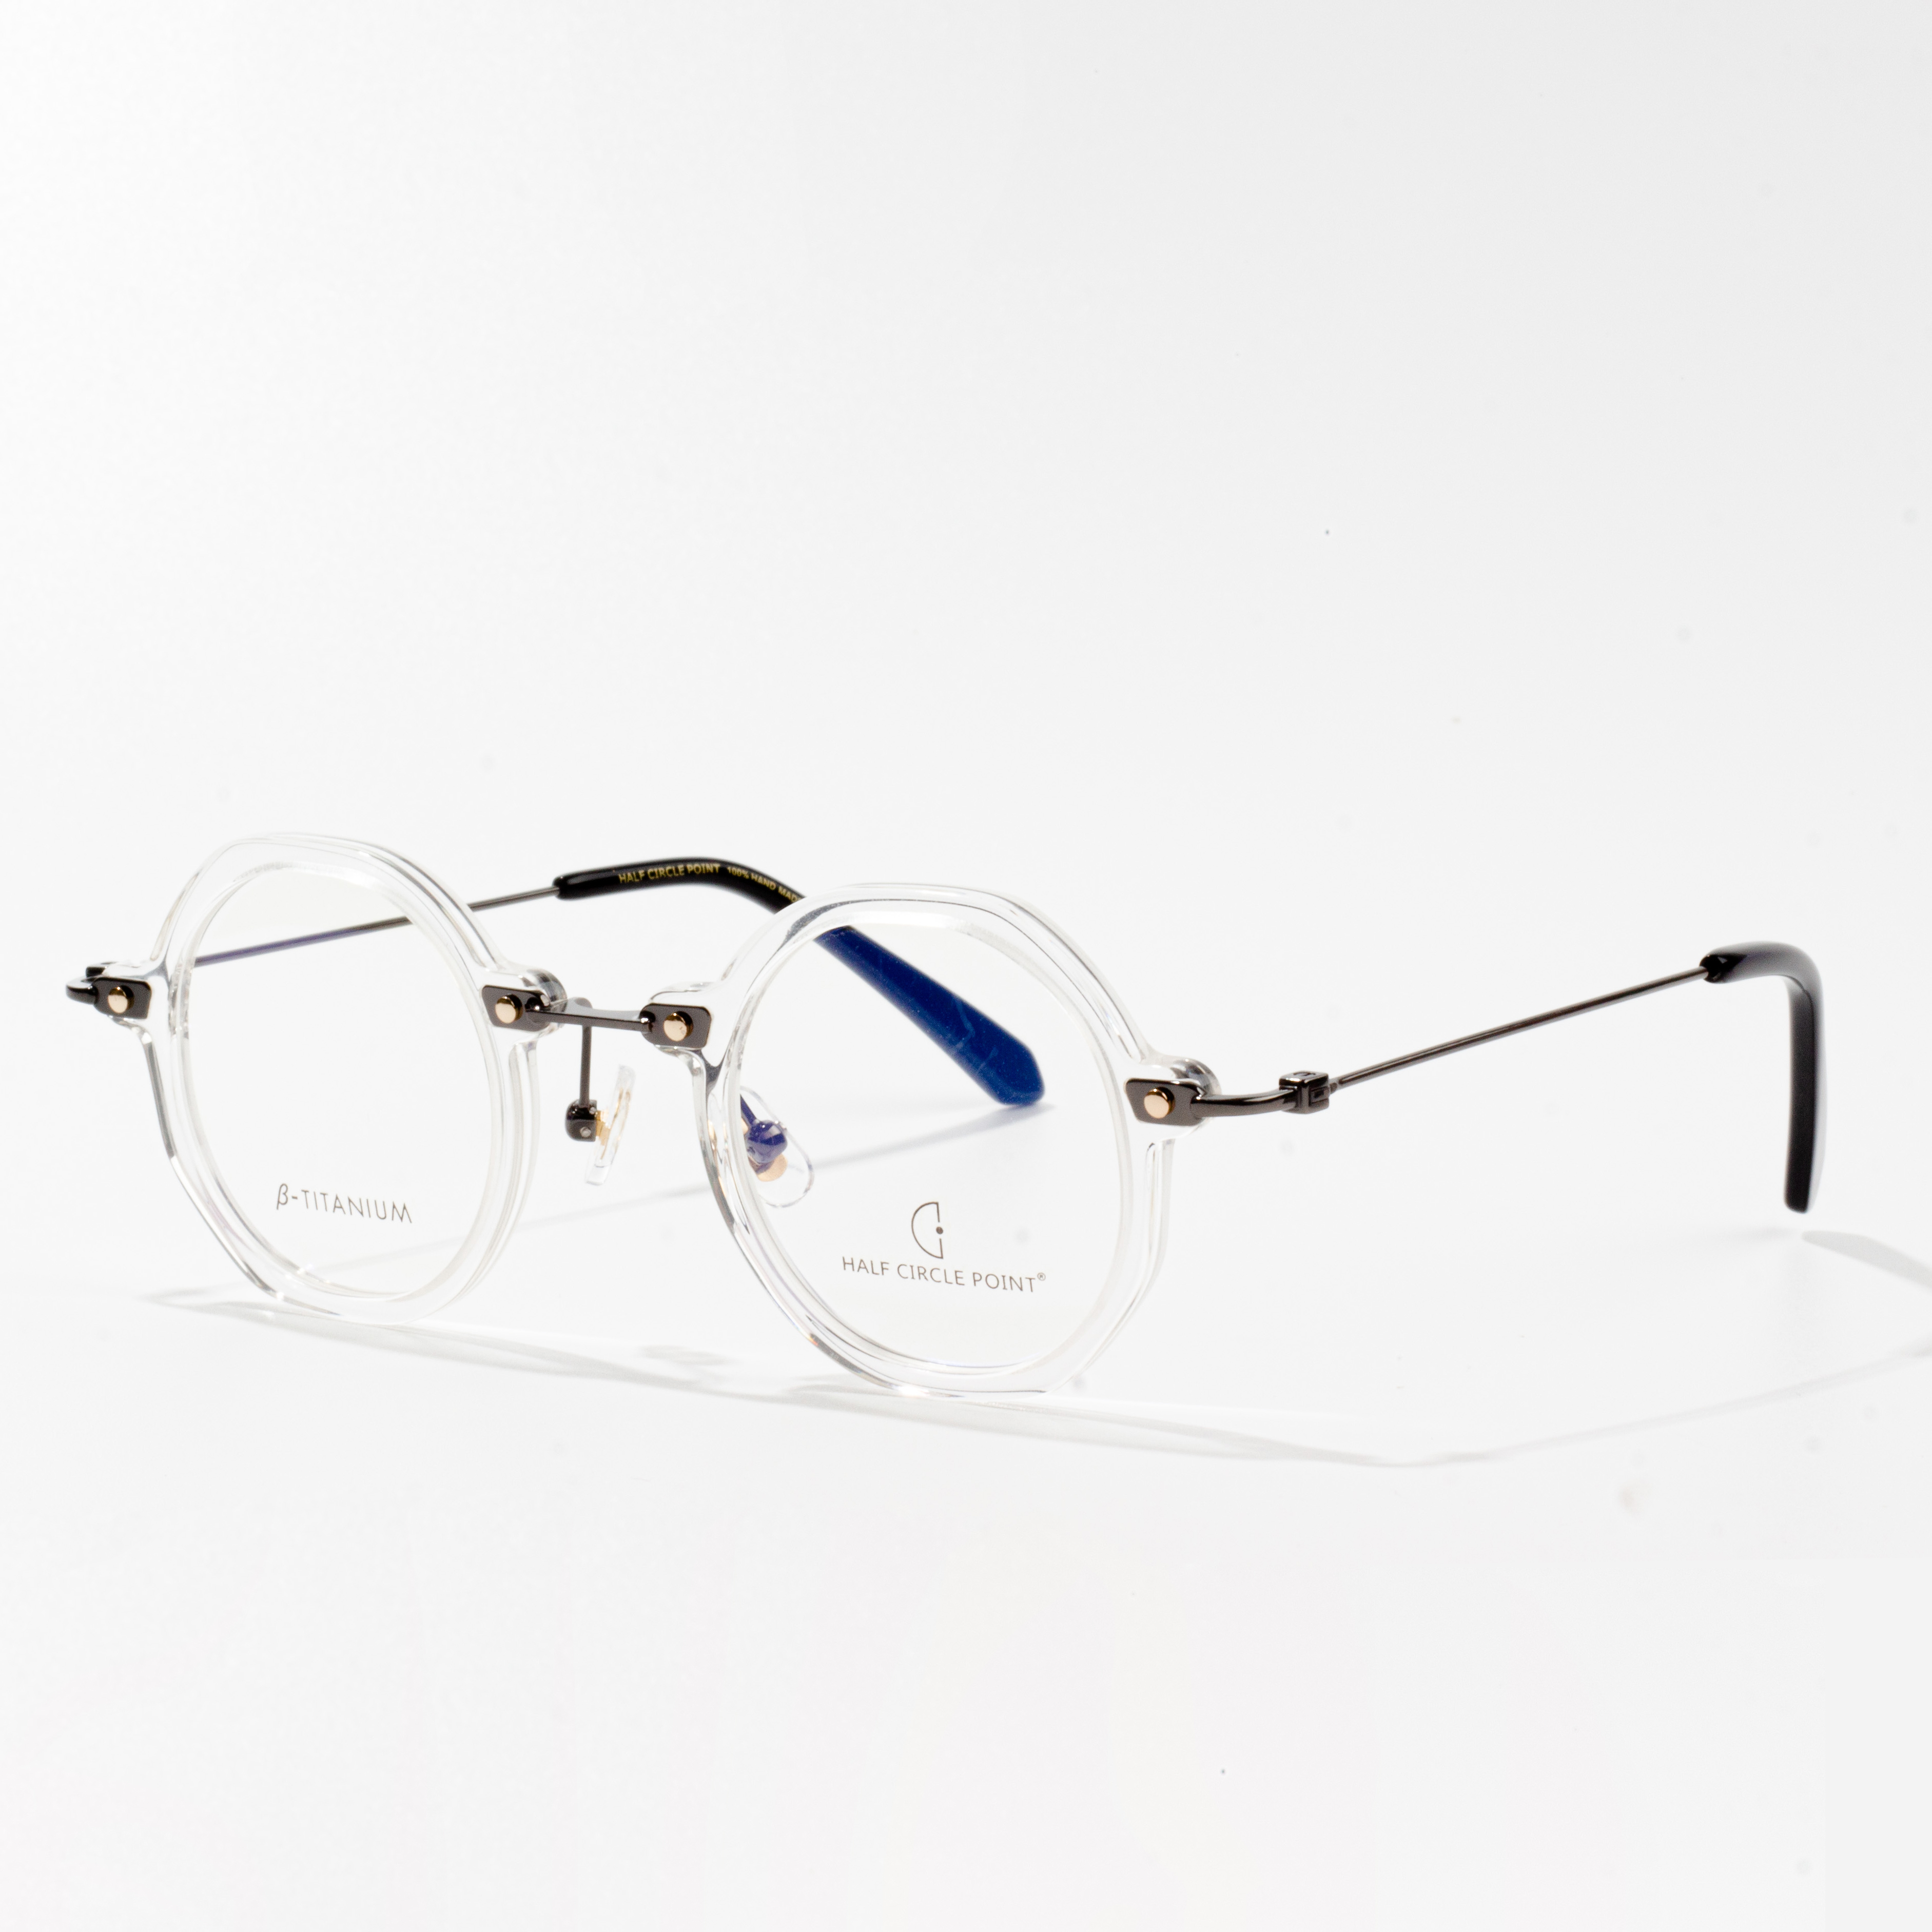 octanowe oprawki do okularów